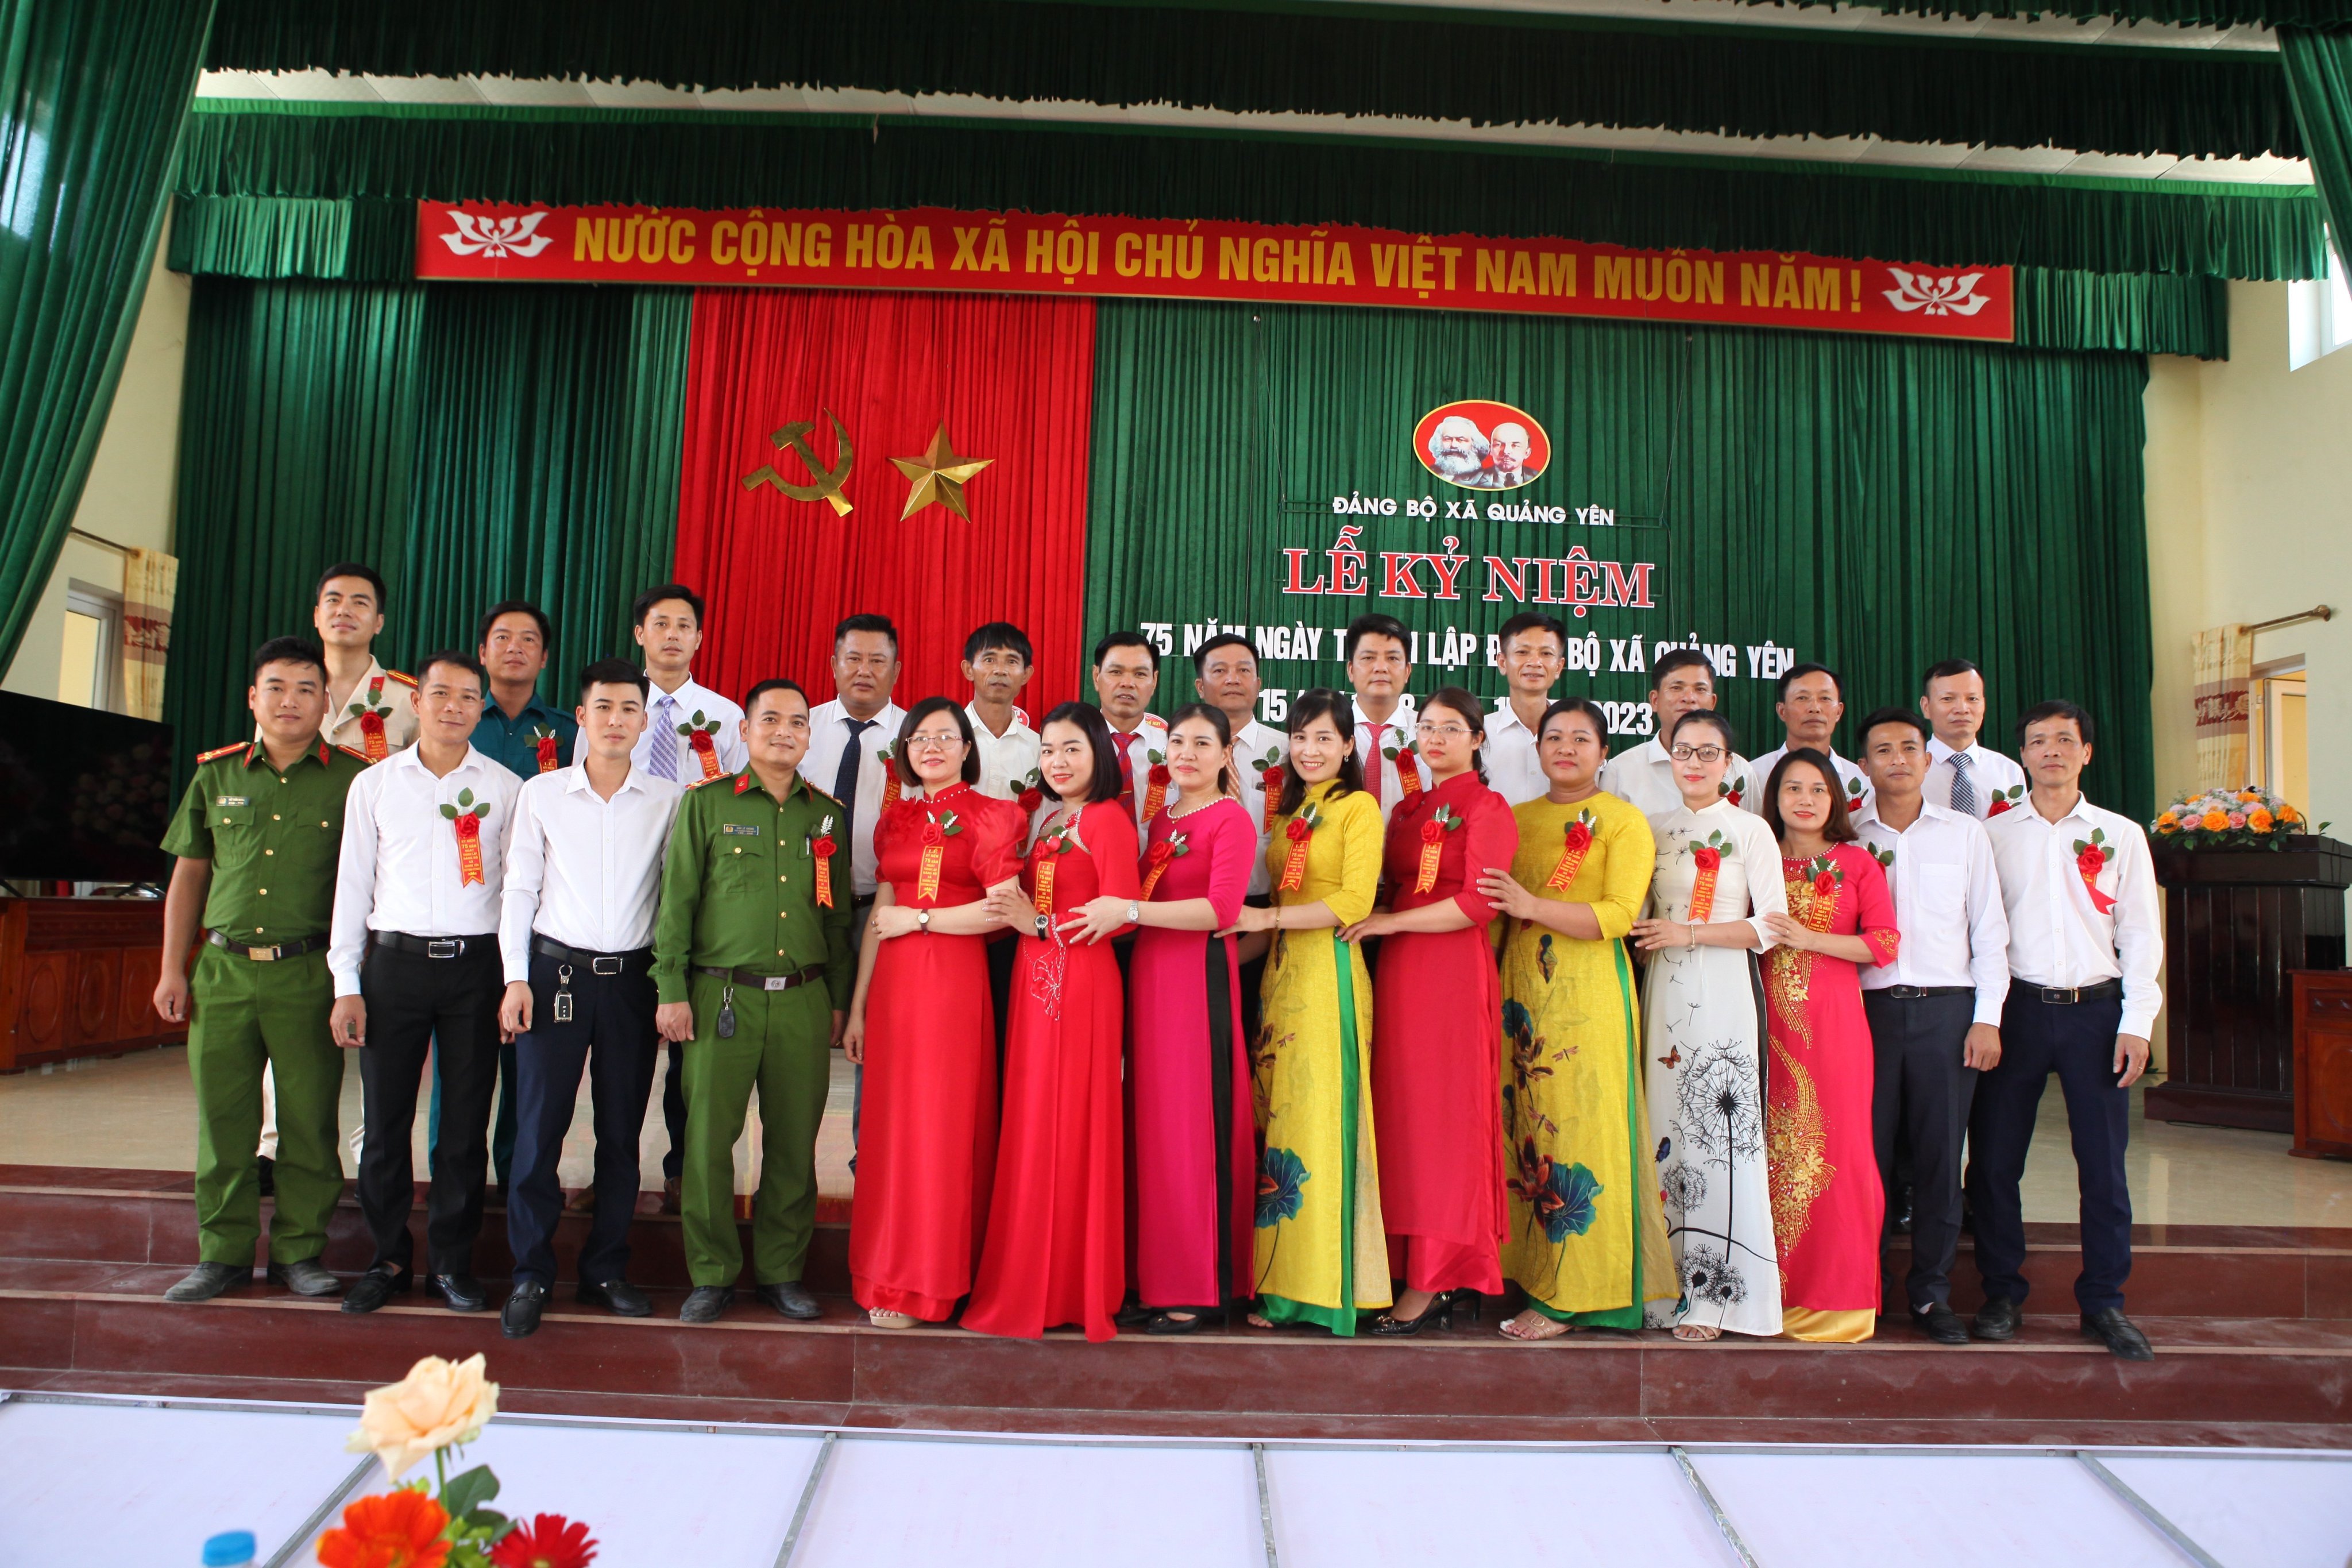 Kỷ niệm 75 năm ngày thành lập Đảng bộ Quảng Yên